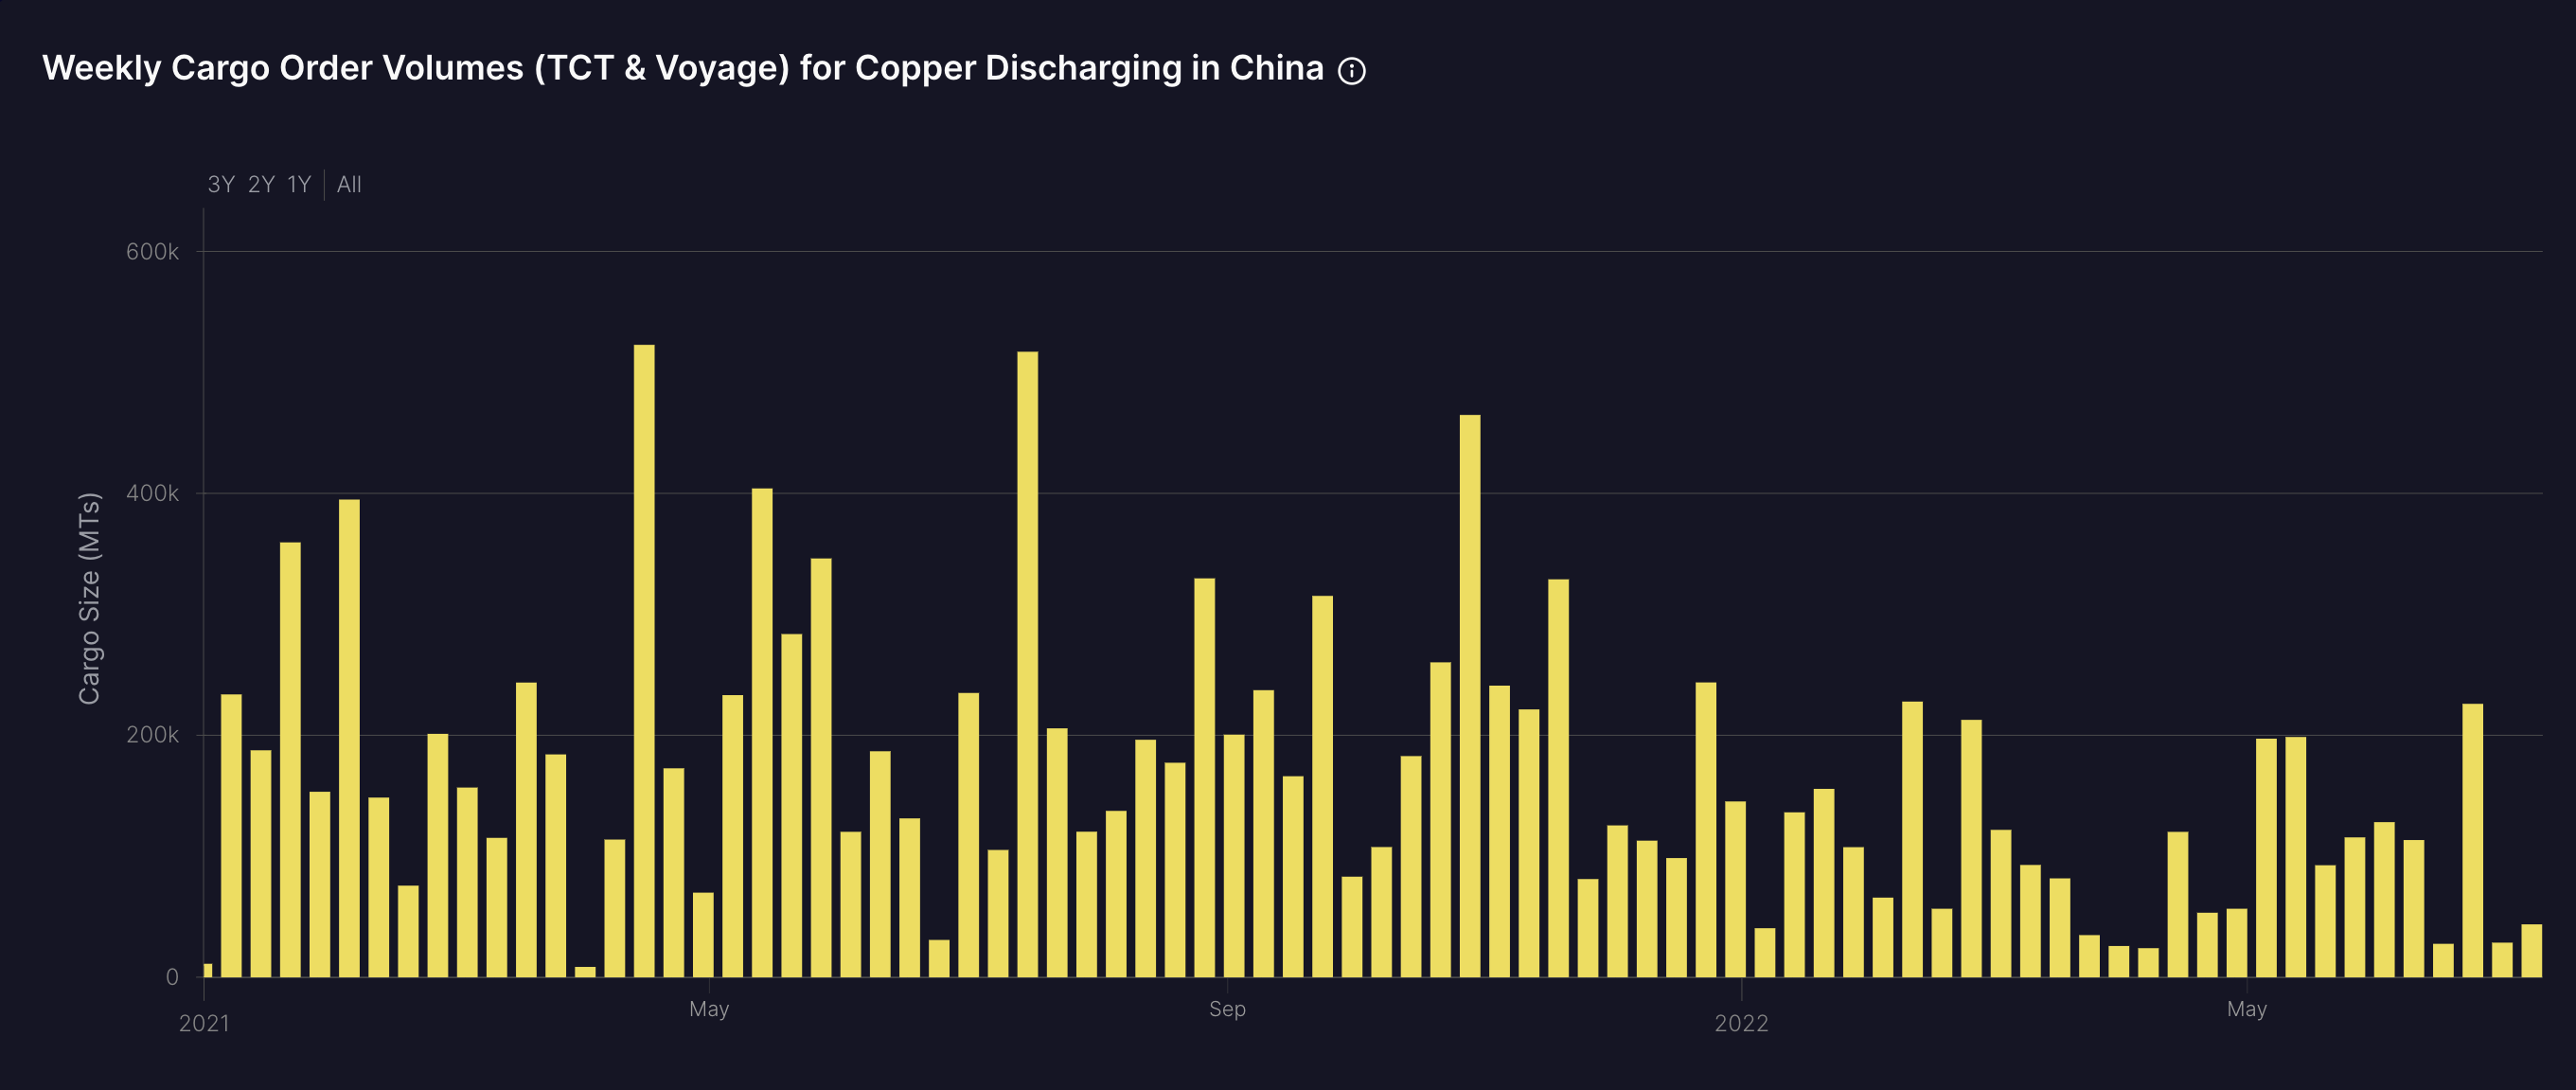 #12 Copper discharging in China